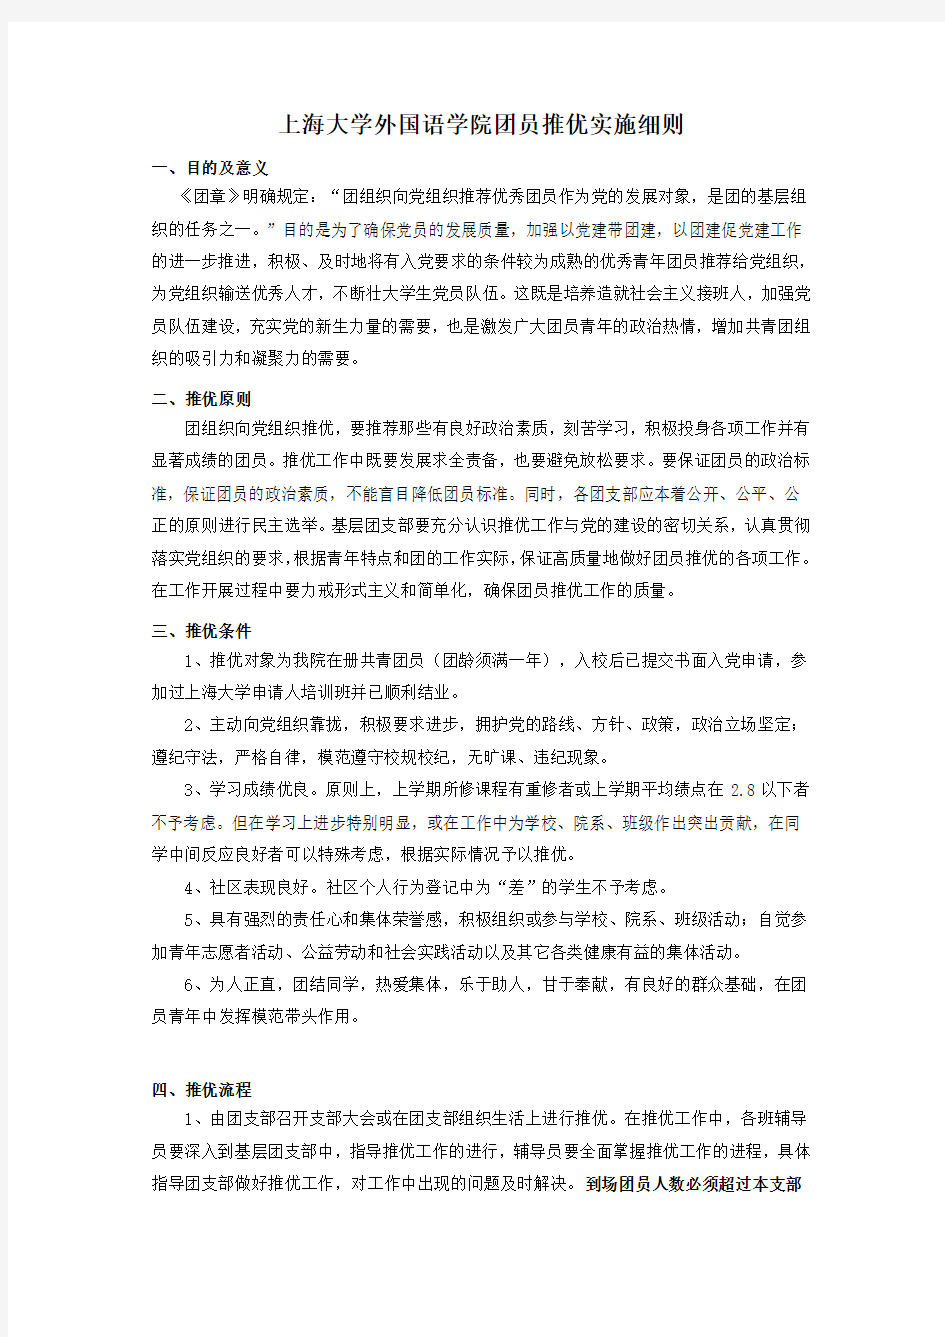 上海大学外国语学院团员推优实施细则(草案) 2